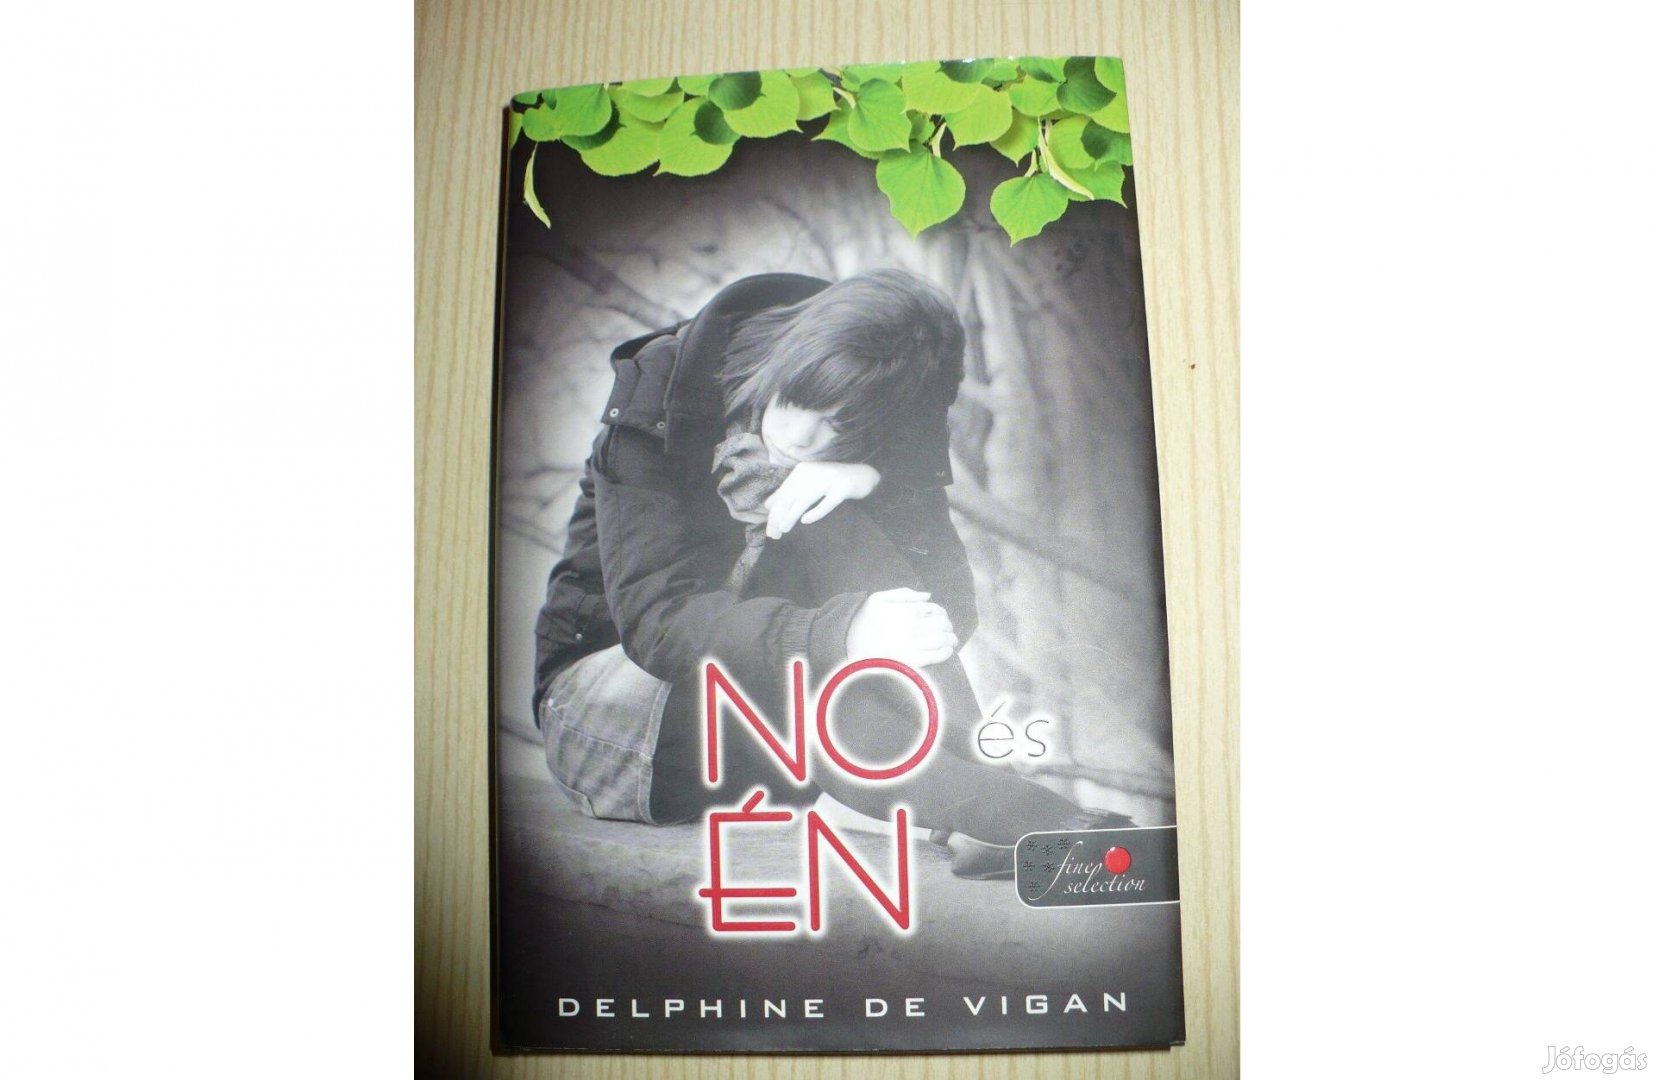 Delphine de Vigan: No és én